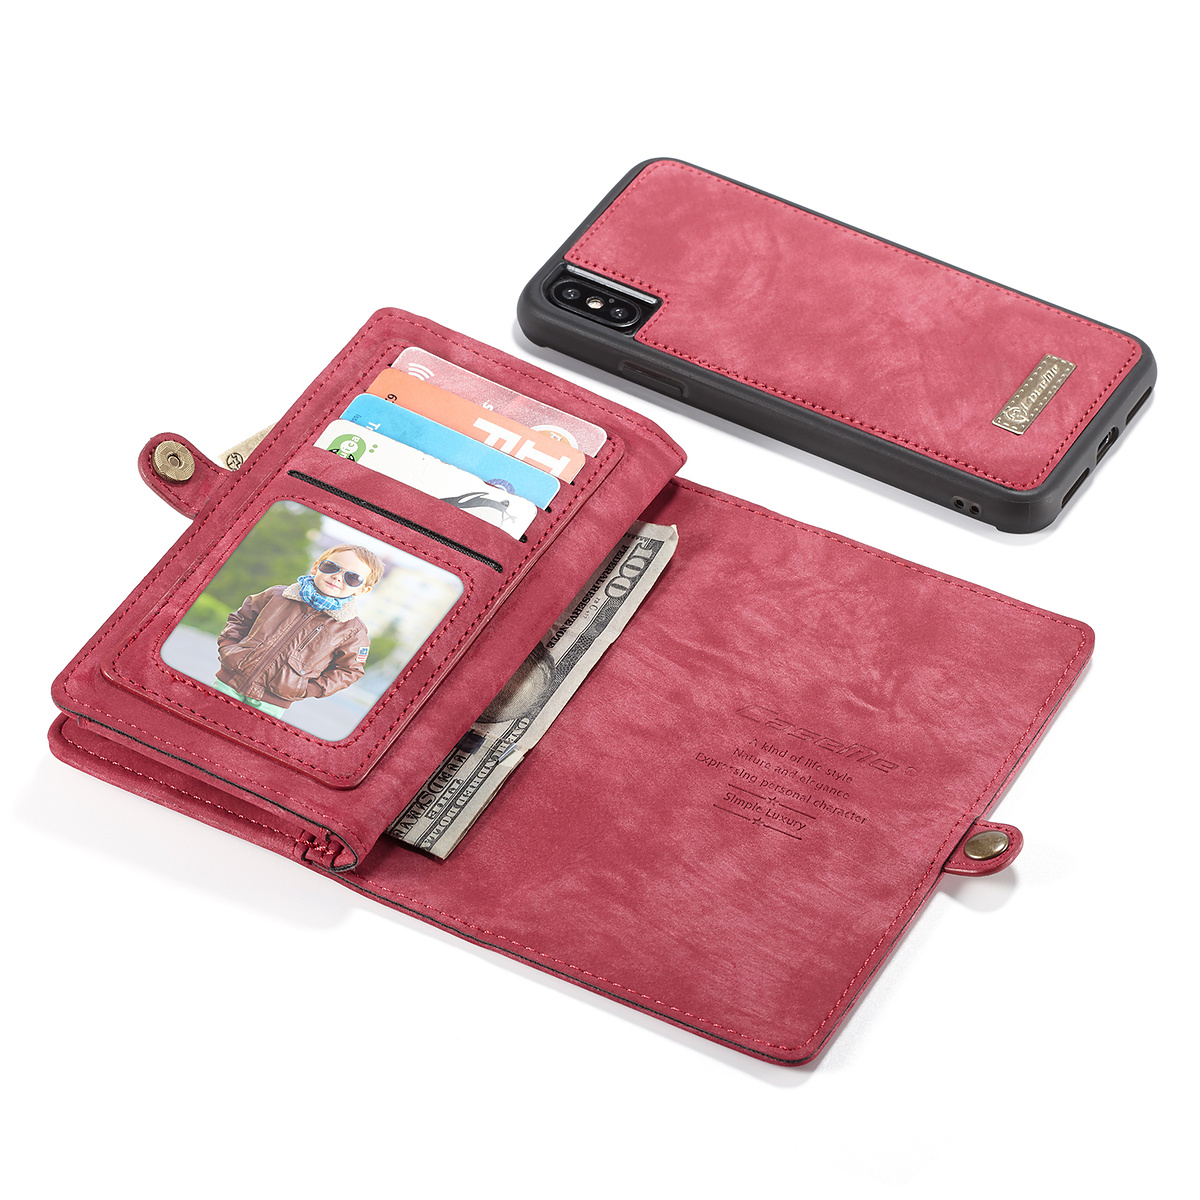 CaseMe plånboksfodral med magnetskal till iPhone X/XS, röd